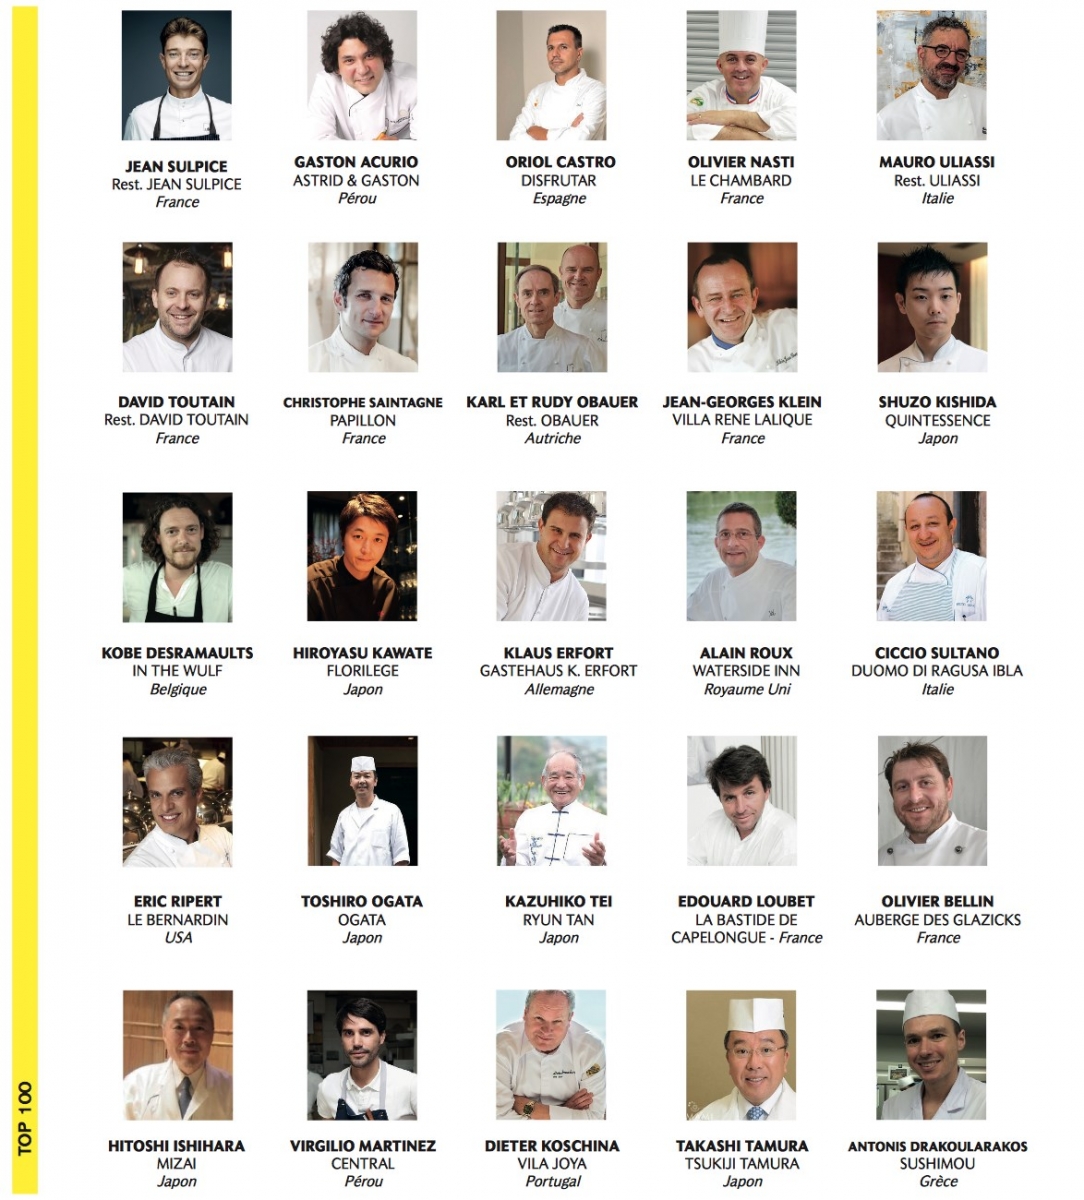 100 Best Chefs 2017 5